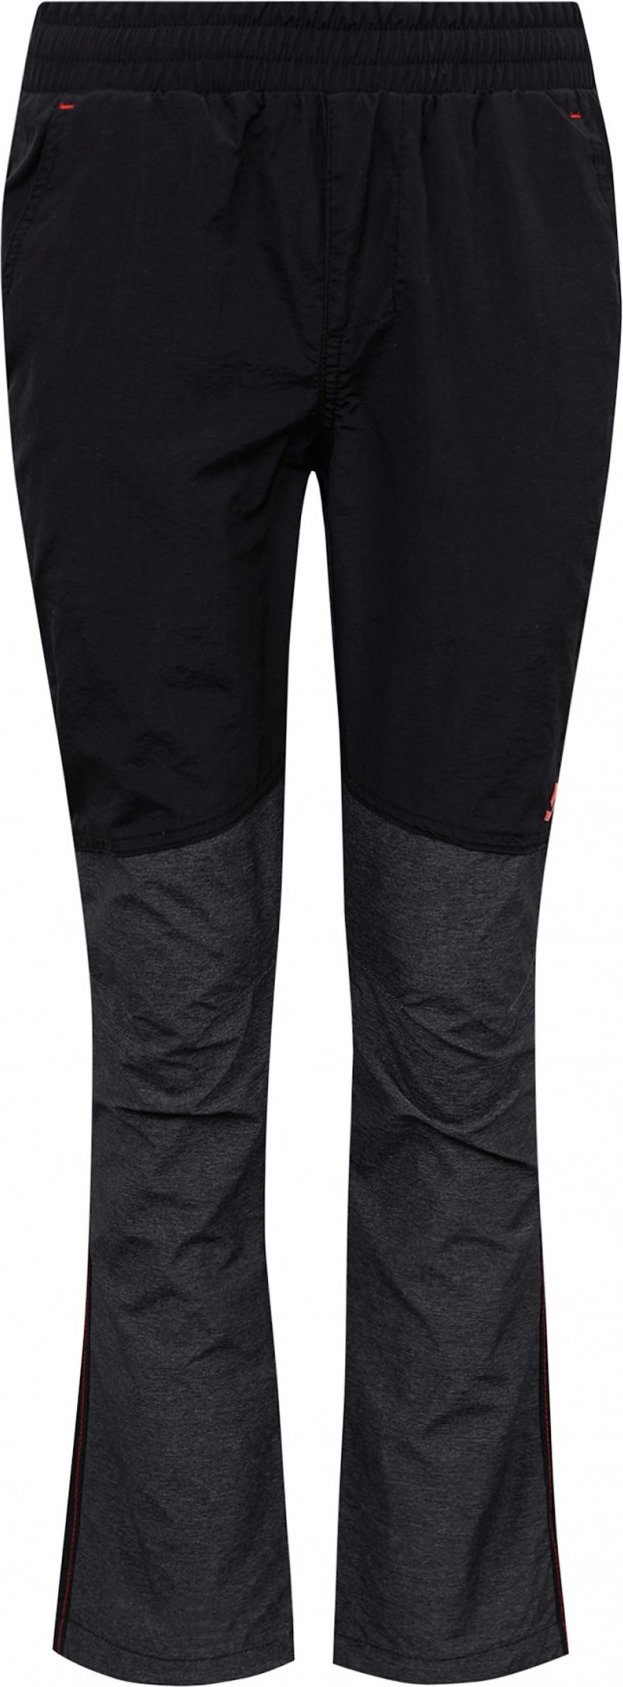 Chlapecké outdoorové kalhoty SAM 73 lionel černé Velikost: 104